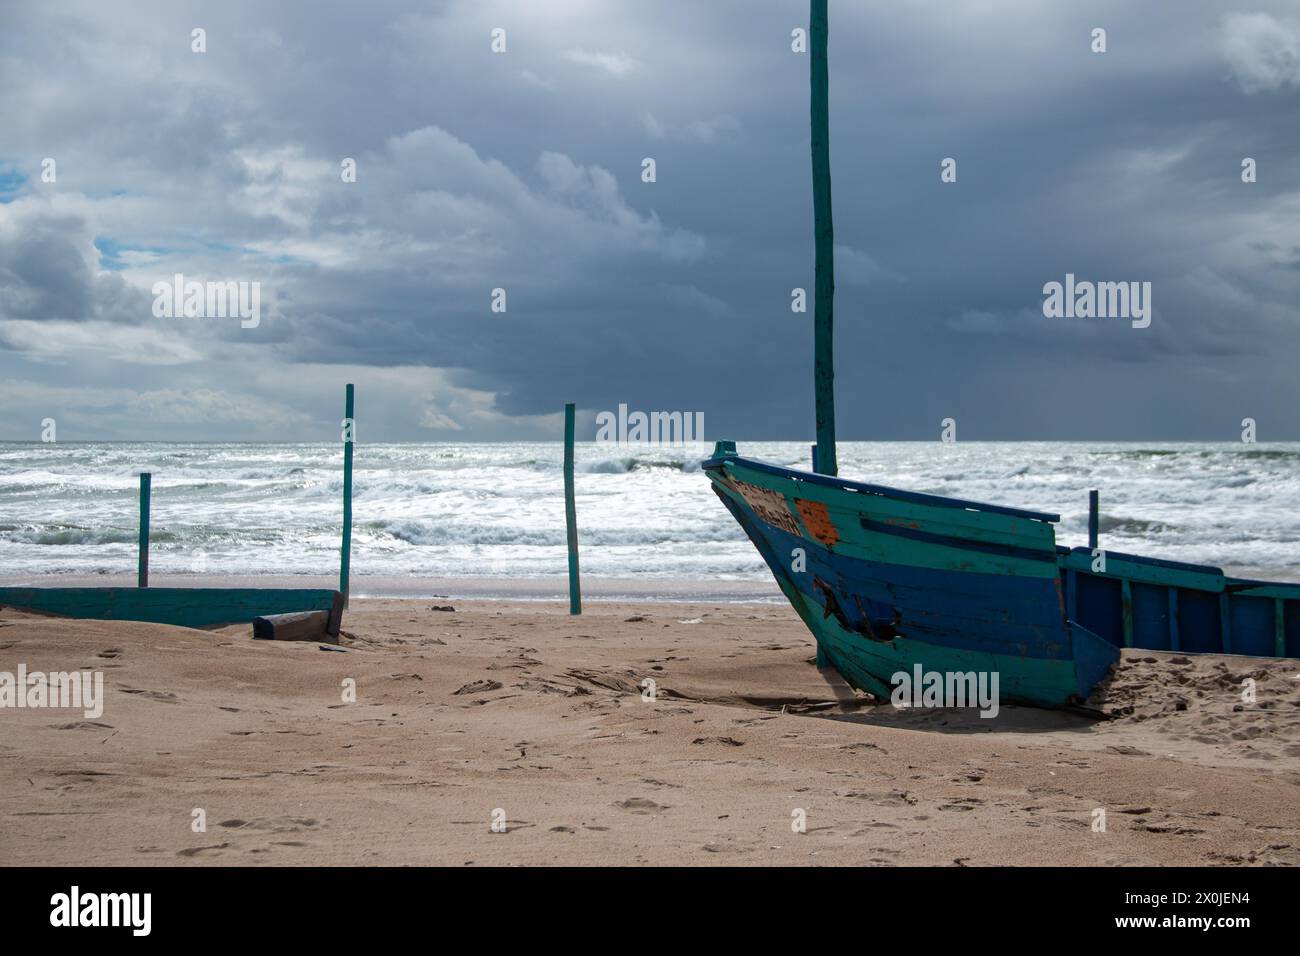 Barche di legno bloccate sulla spiaggia abbandonate e decrepite a causa del tempo inclemente con mare agitato sullo sfondo Foto Stock